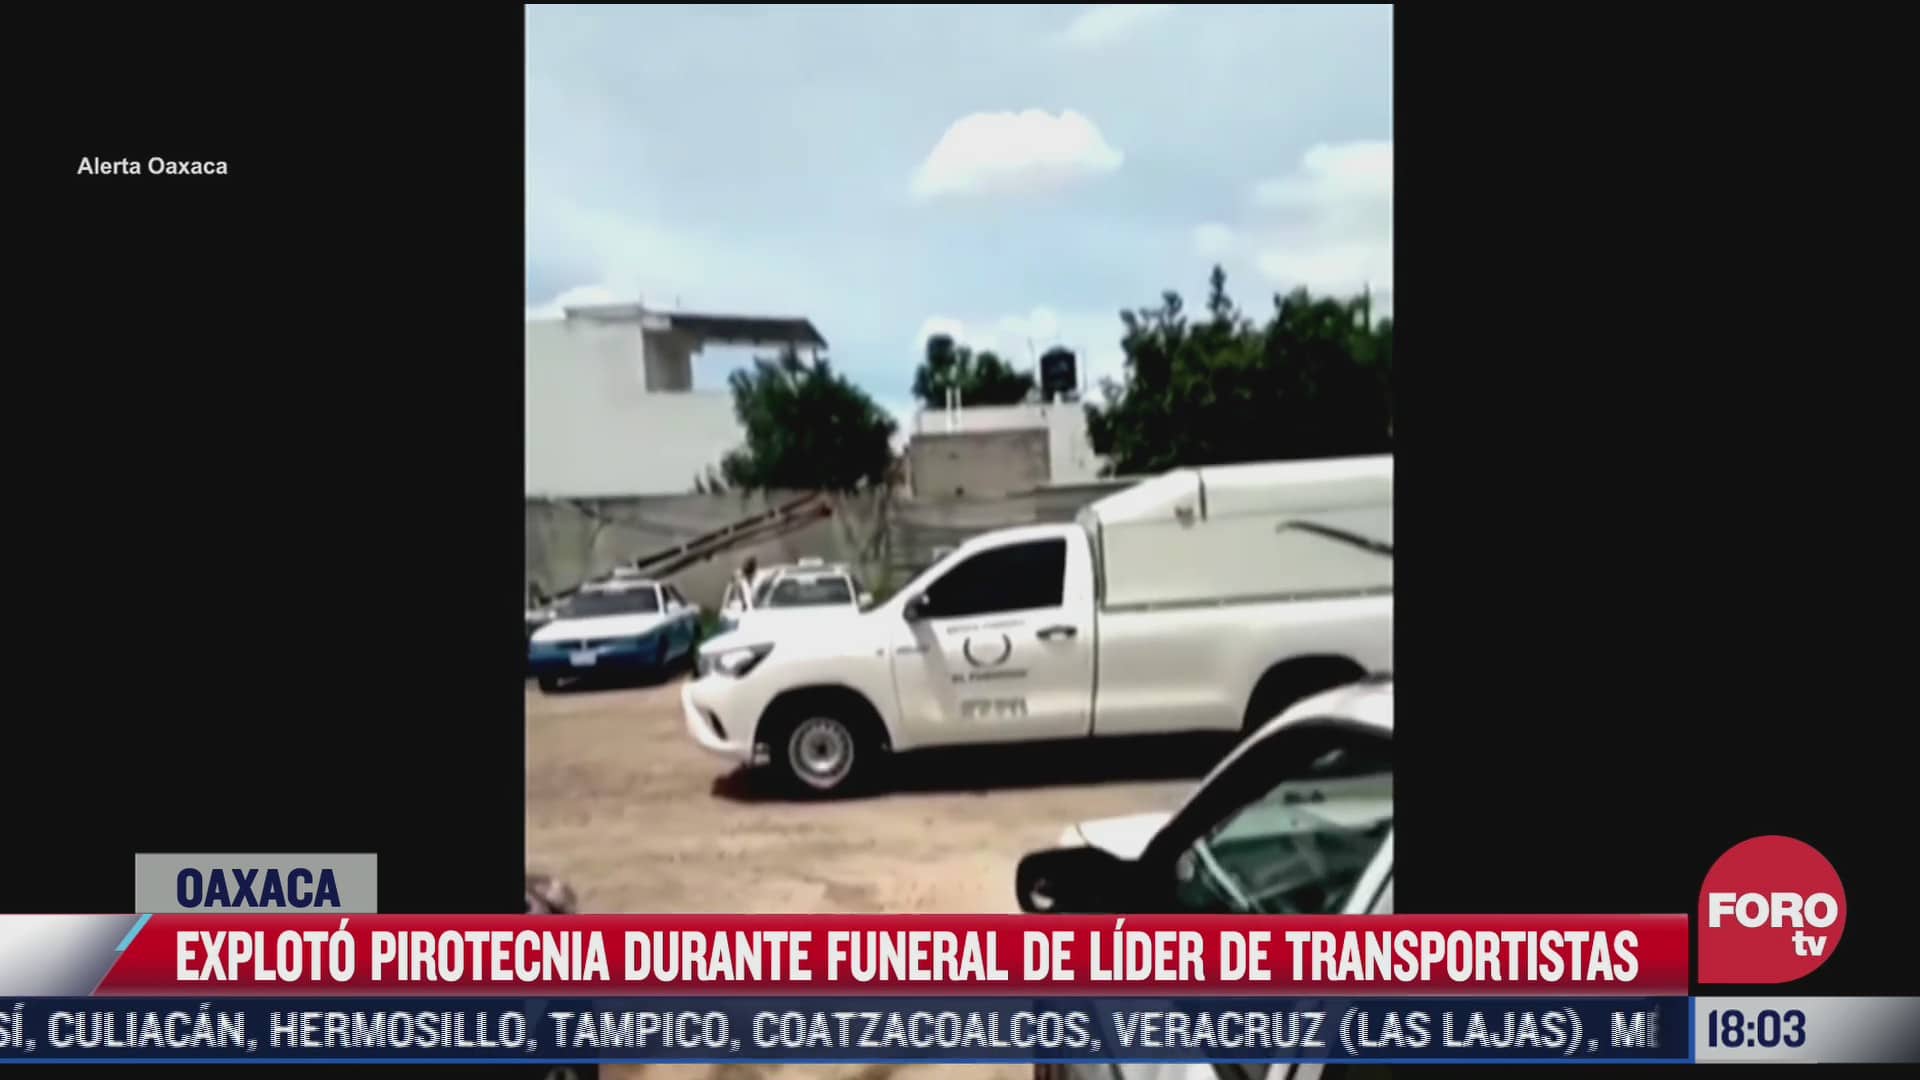 video explota pirotecnia durante funeral de lider de transportistas en oaxaca